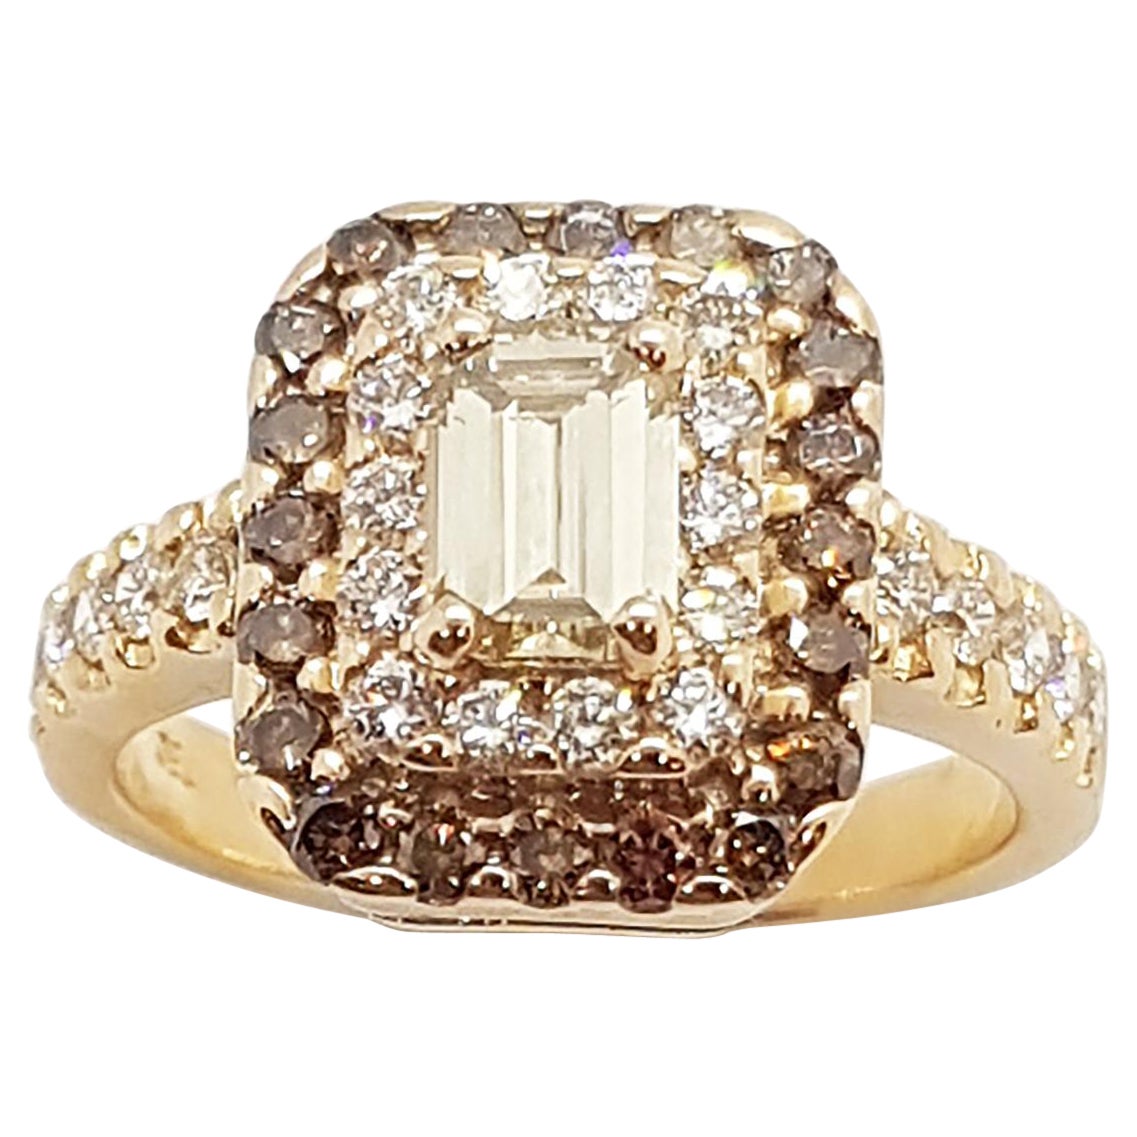 Brown Diamond Engagement Ring Set in 18 Karat Rose Gold Settings